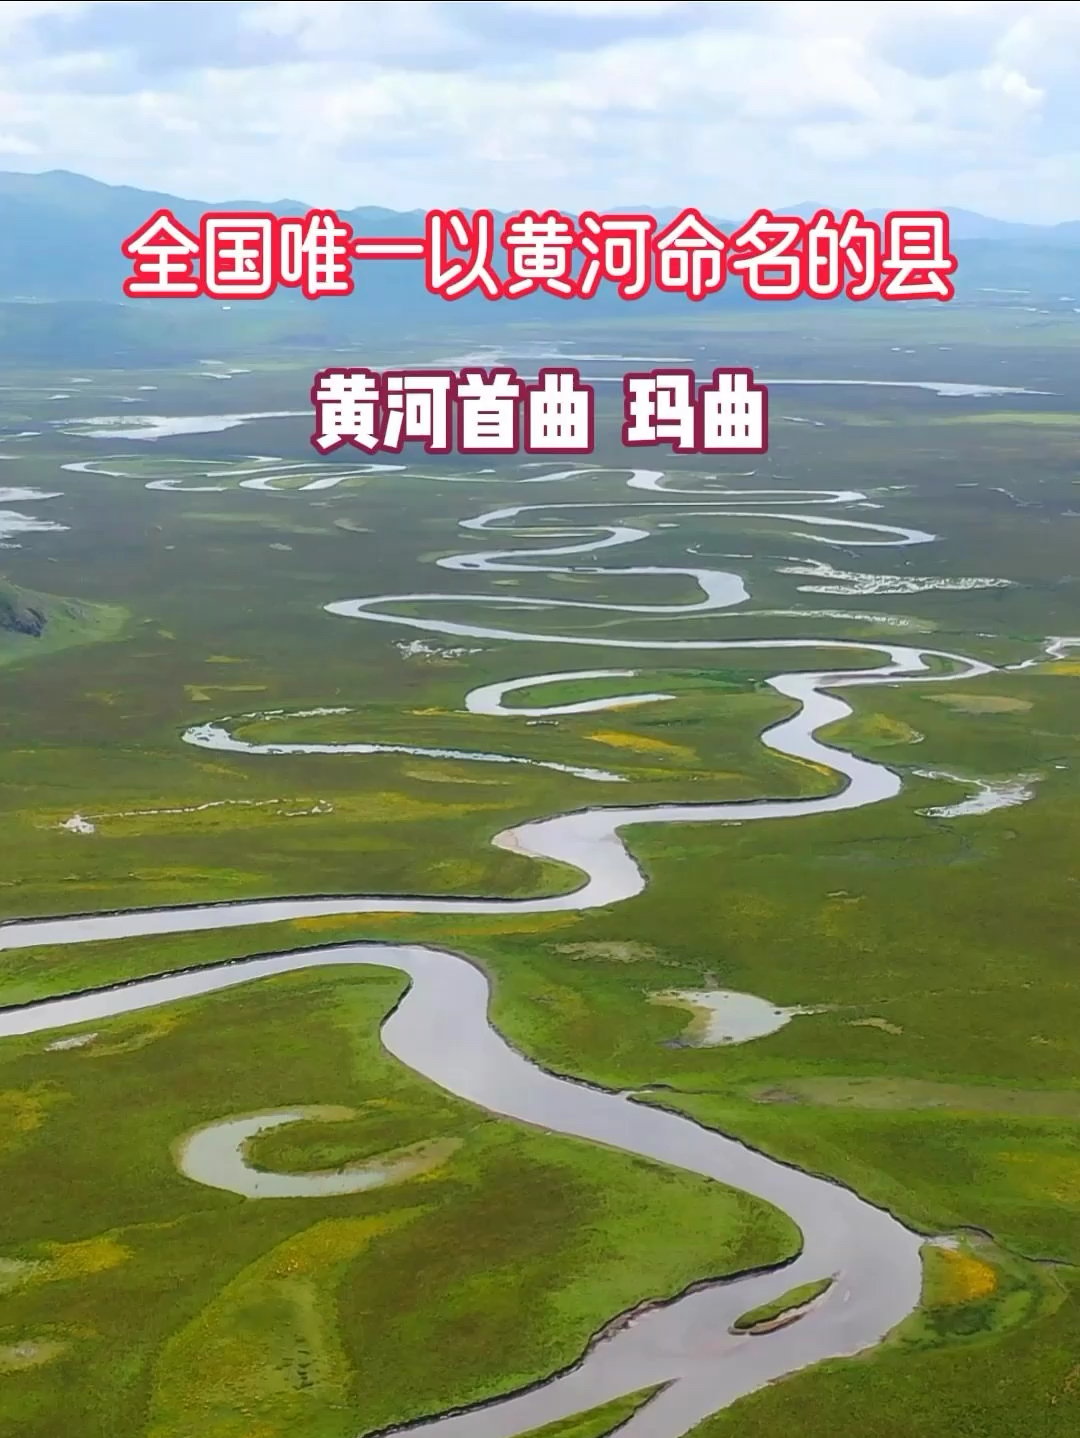 玛曲藏语为孔雀河是黄河之意，全国唯一以中华民族母亲河，黄河命